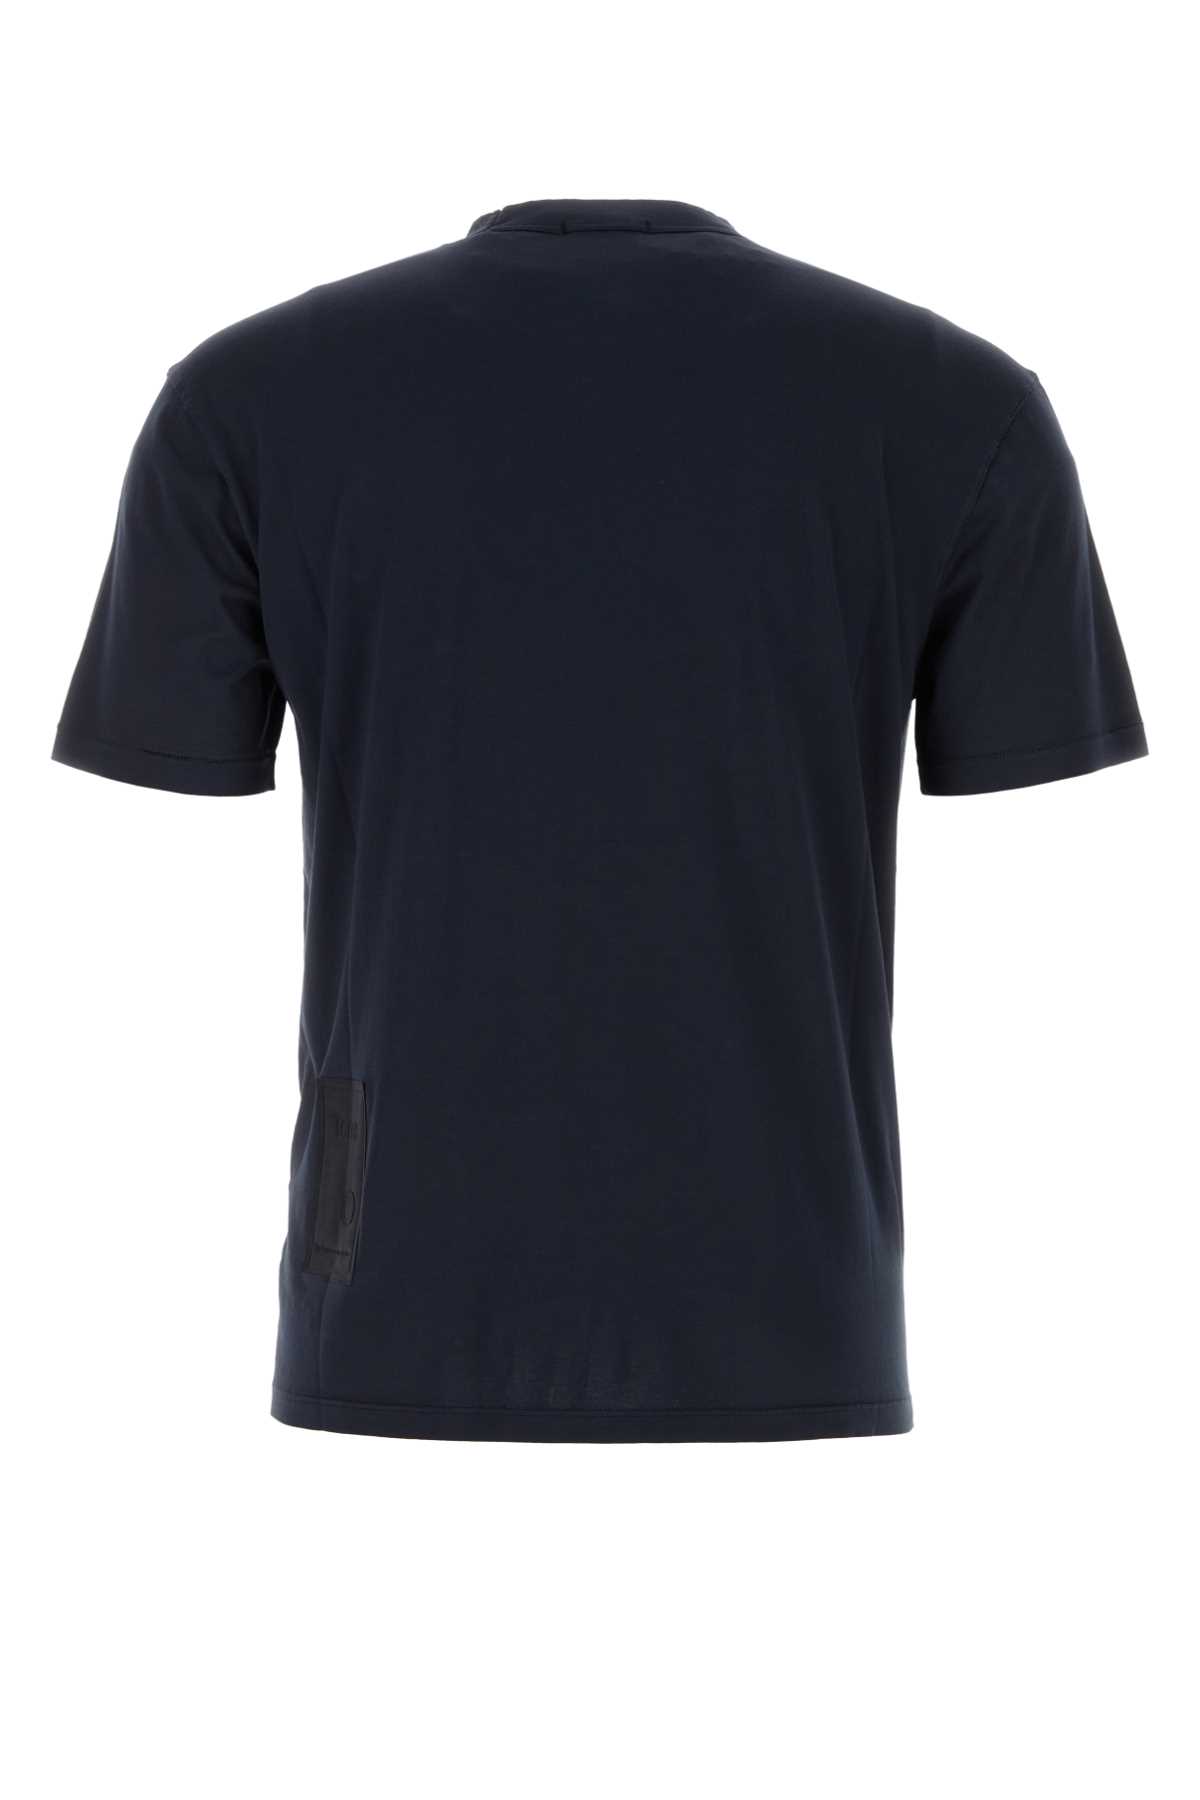 Ten C Midnight Blue Cotton T-shirt